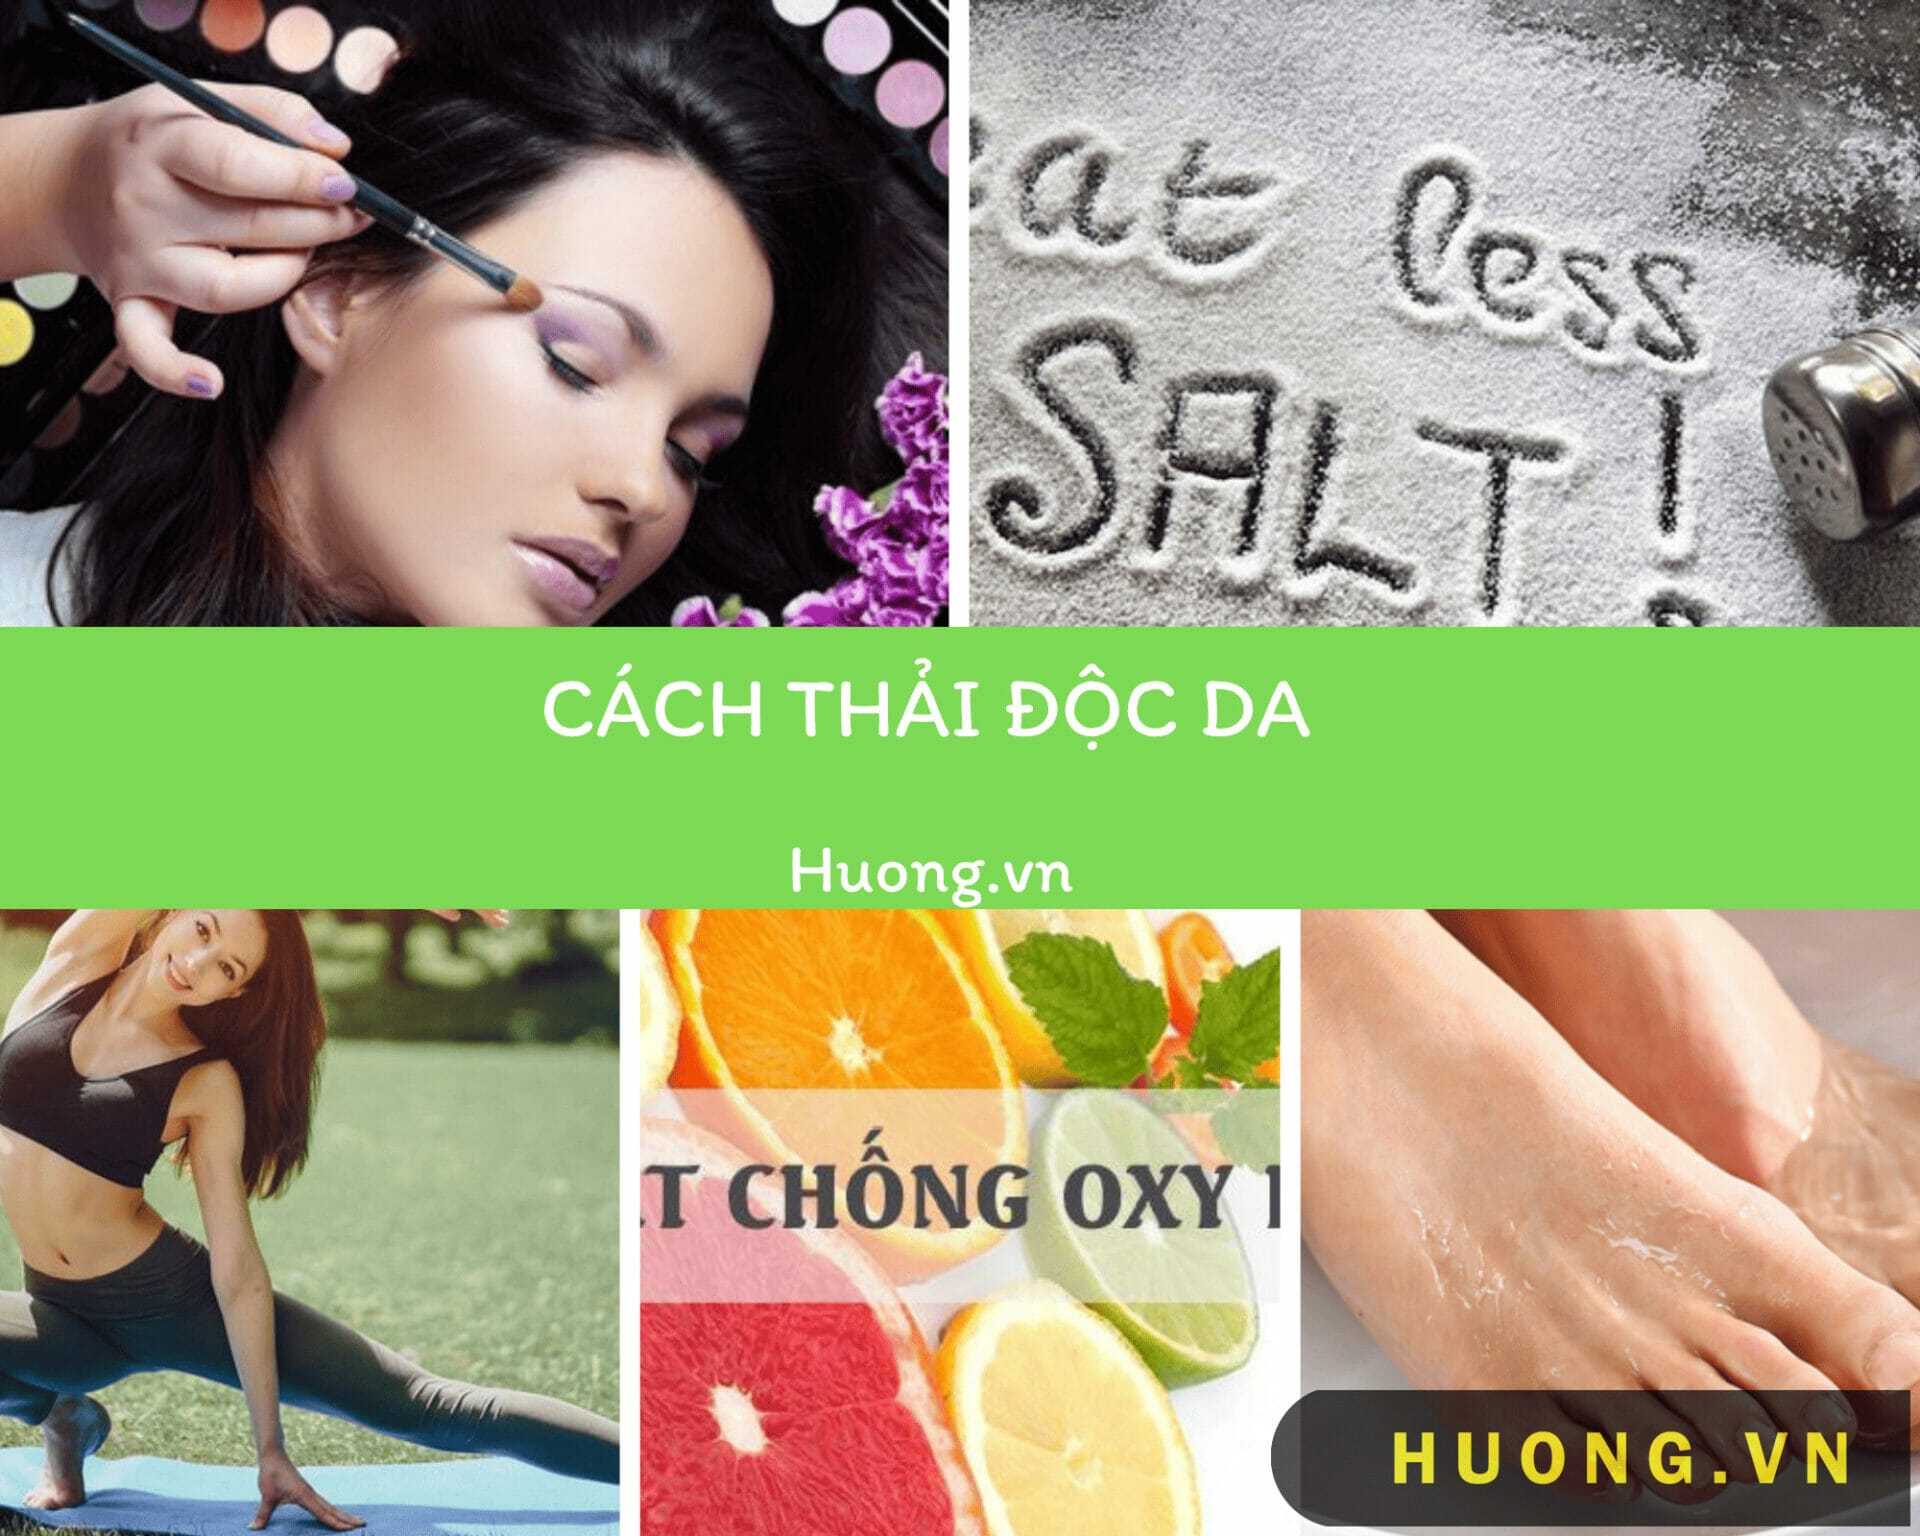 cach thai doc co the8 1